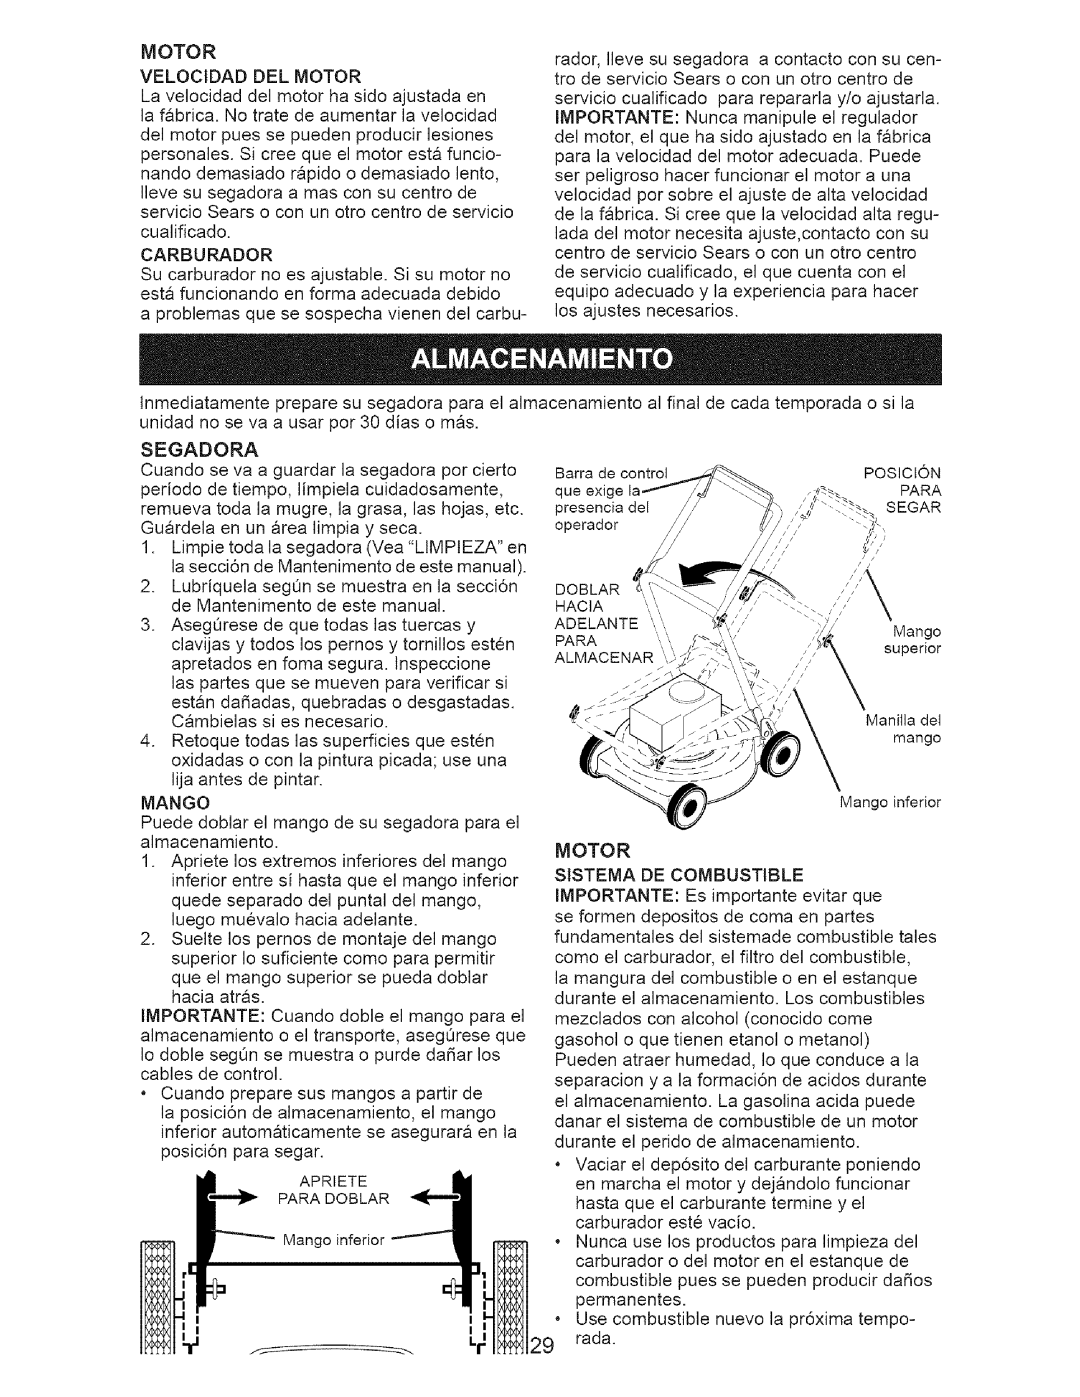 Craftsman 917.385142 owner manual Motor Velocidad Del Motor, Mango, Motor Sistema De Combustible 